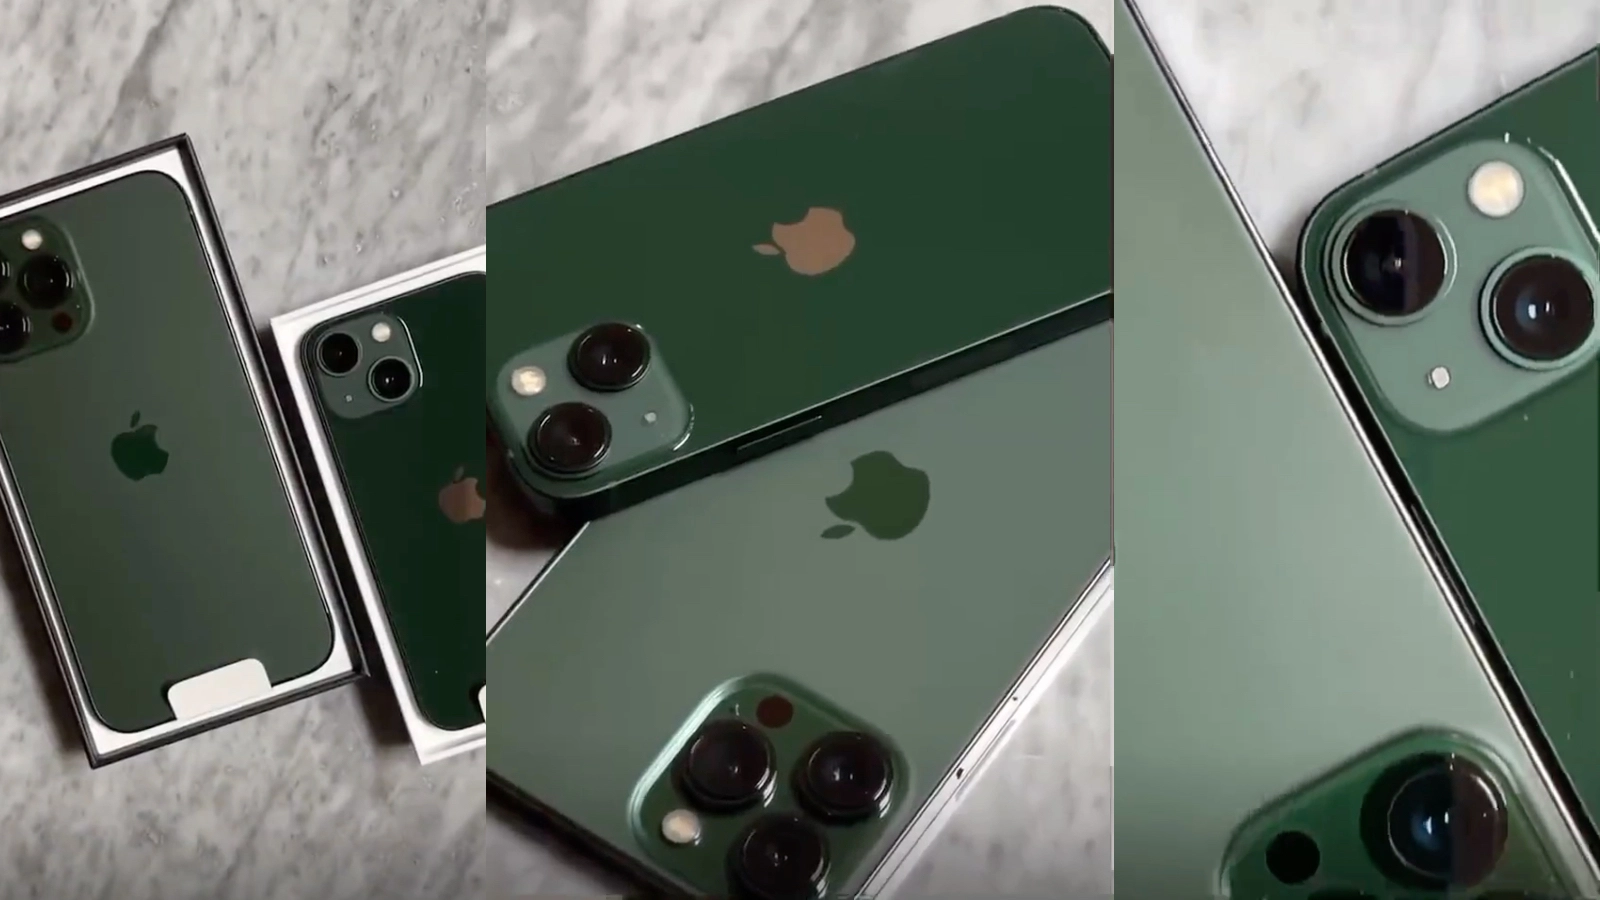 ตรงปกมั้ย?? โผล่วิดีโอแกะกล่อง iPhone 13 และ iPhone 13 Pro สีเขียวล่าสุด